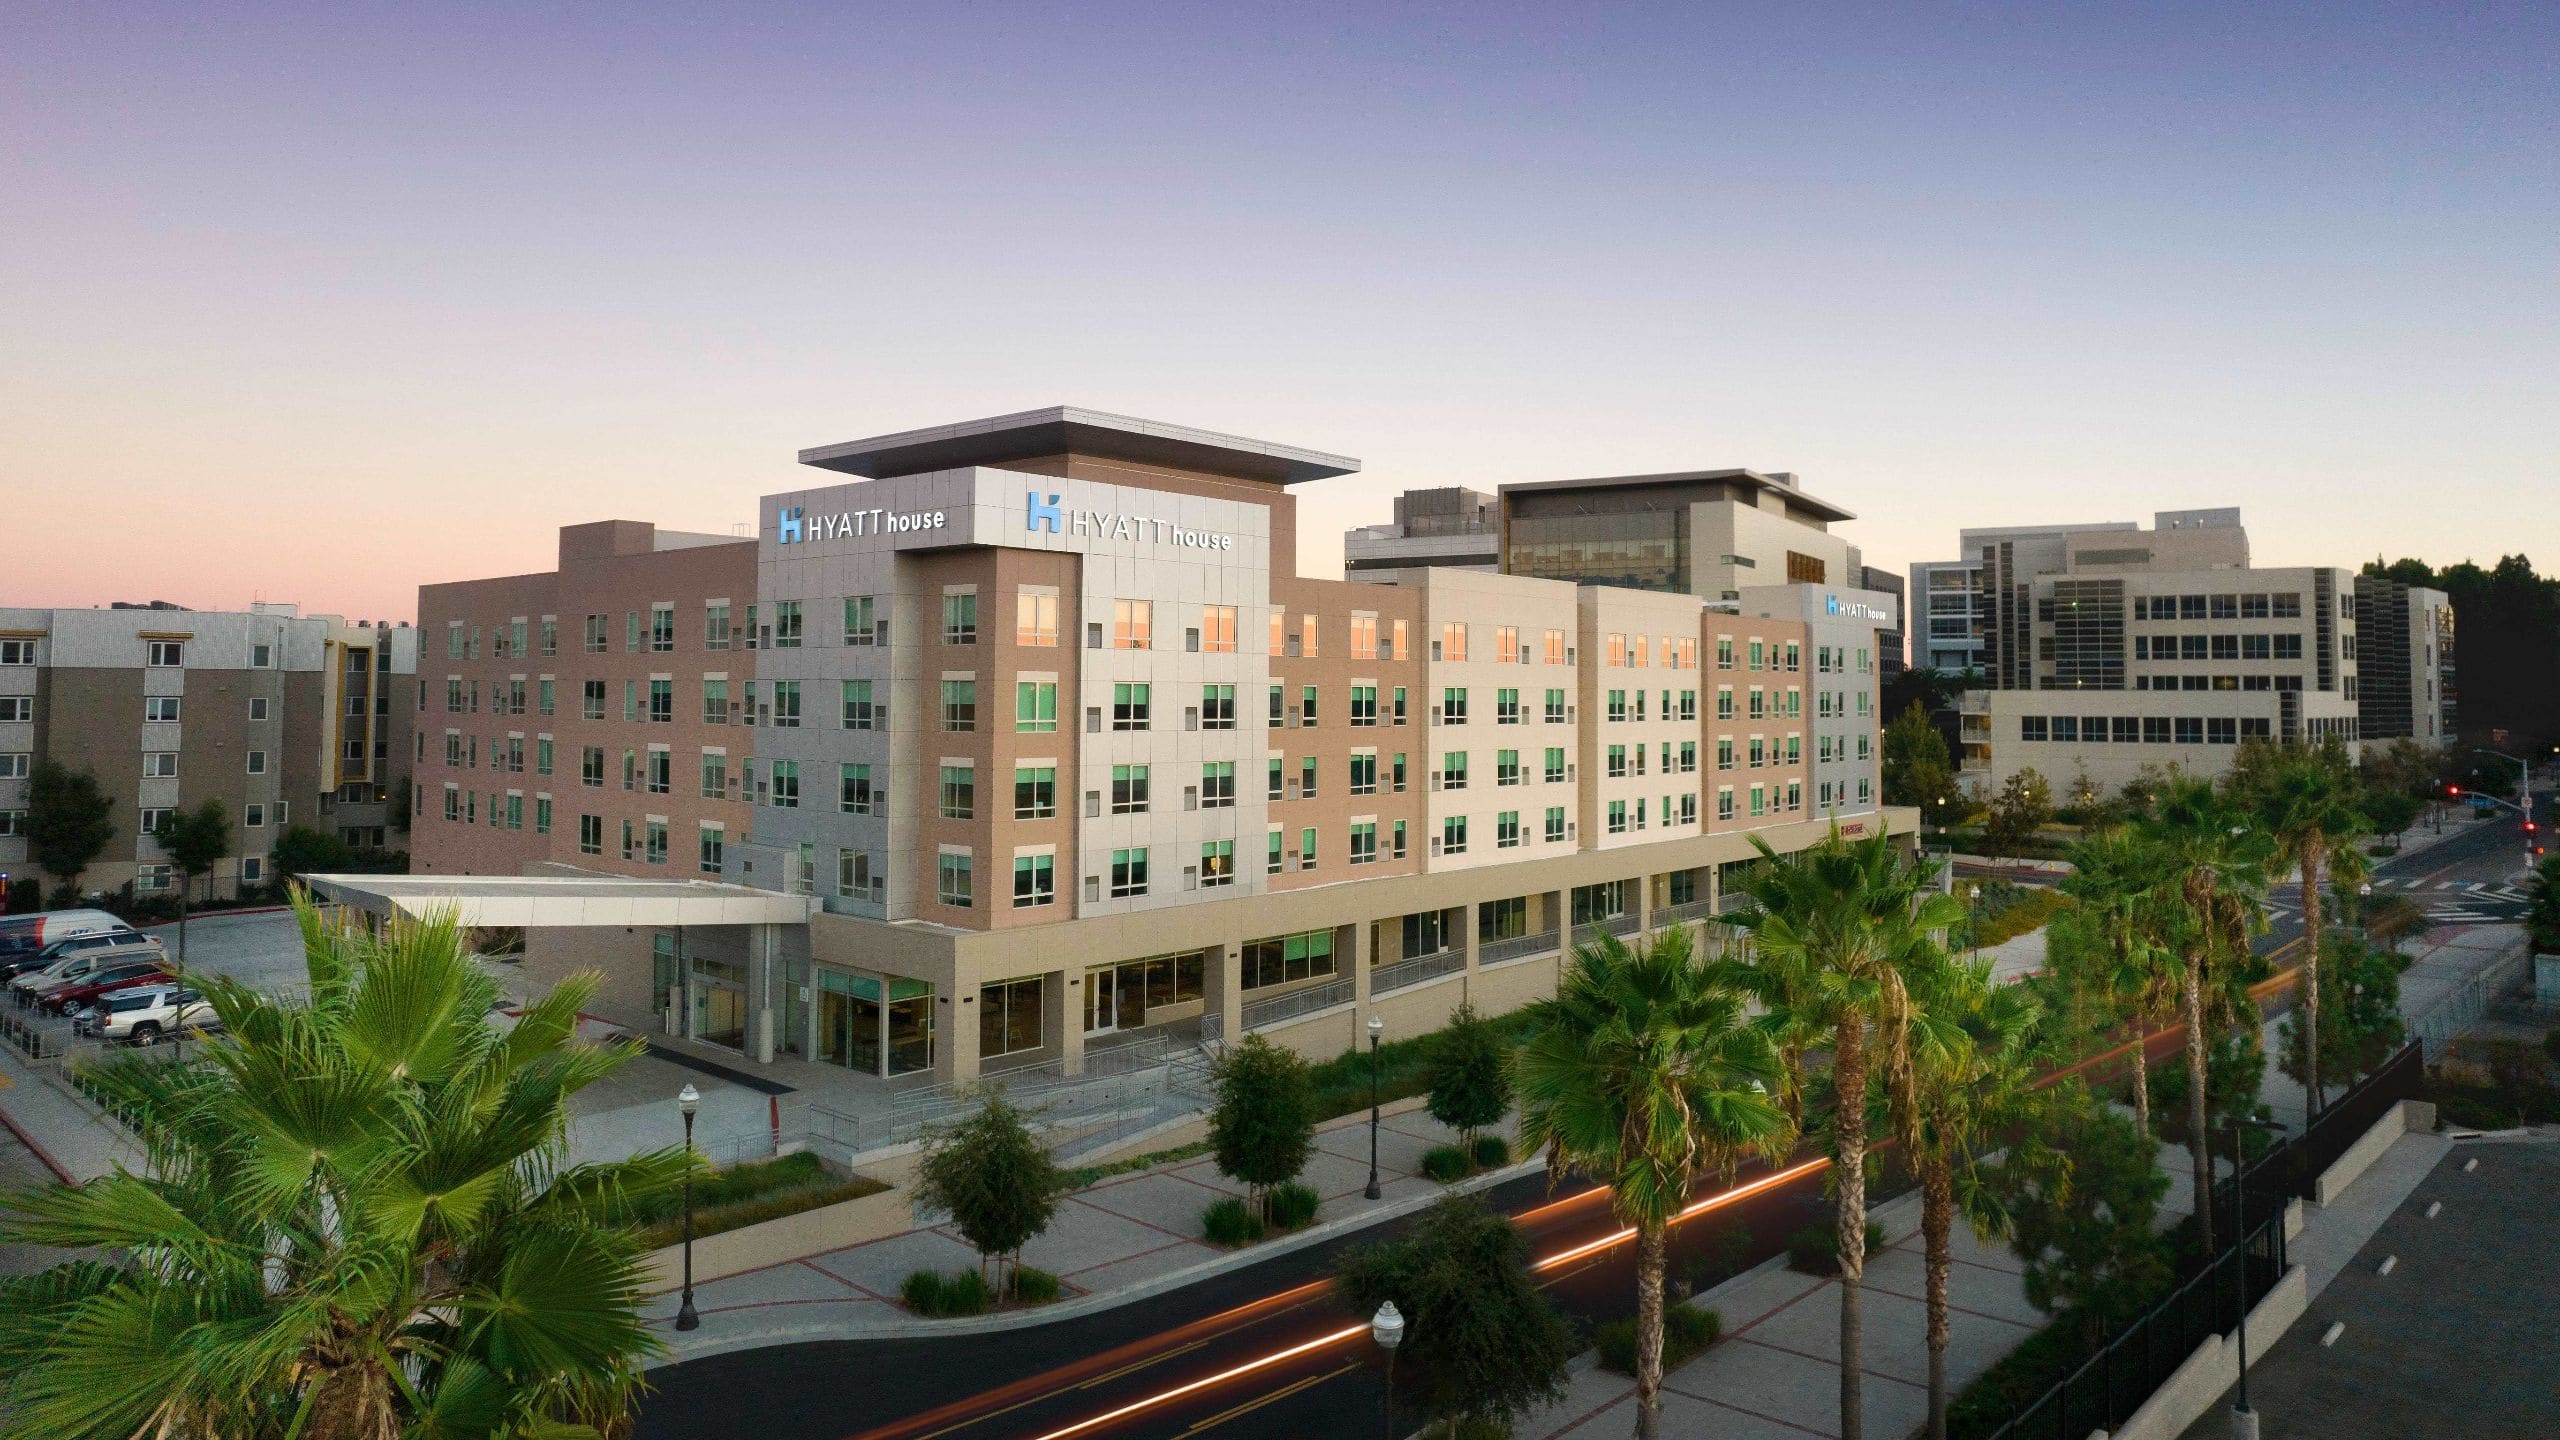 Hyatt House LA - University Medical Center Hotel Exterior Dusk